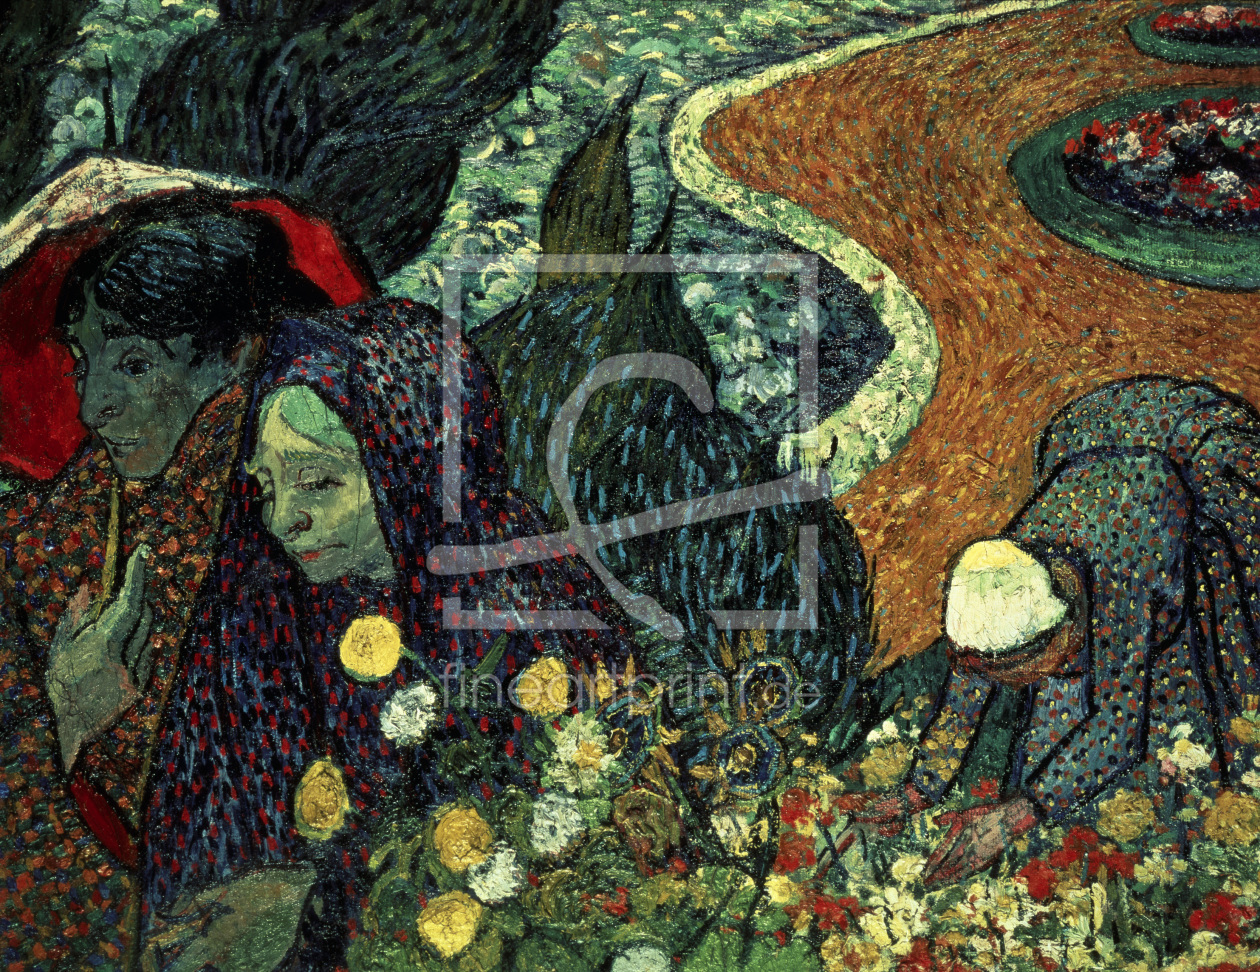 Bild-Nr.: 30003460 van Gogh/Souvenir of the Garden in Etten erstellt von van Gogh, Vincent